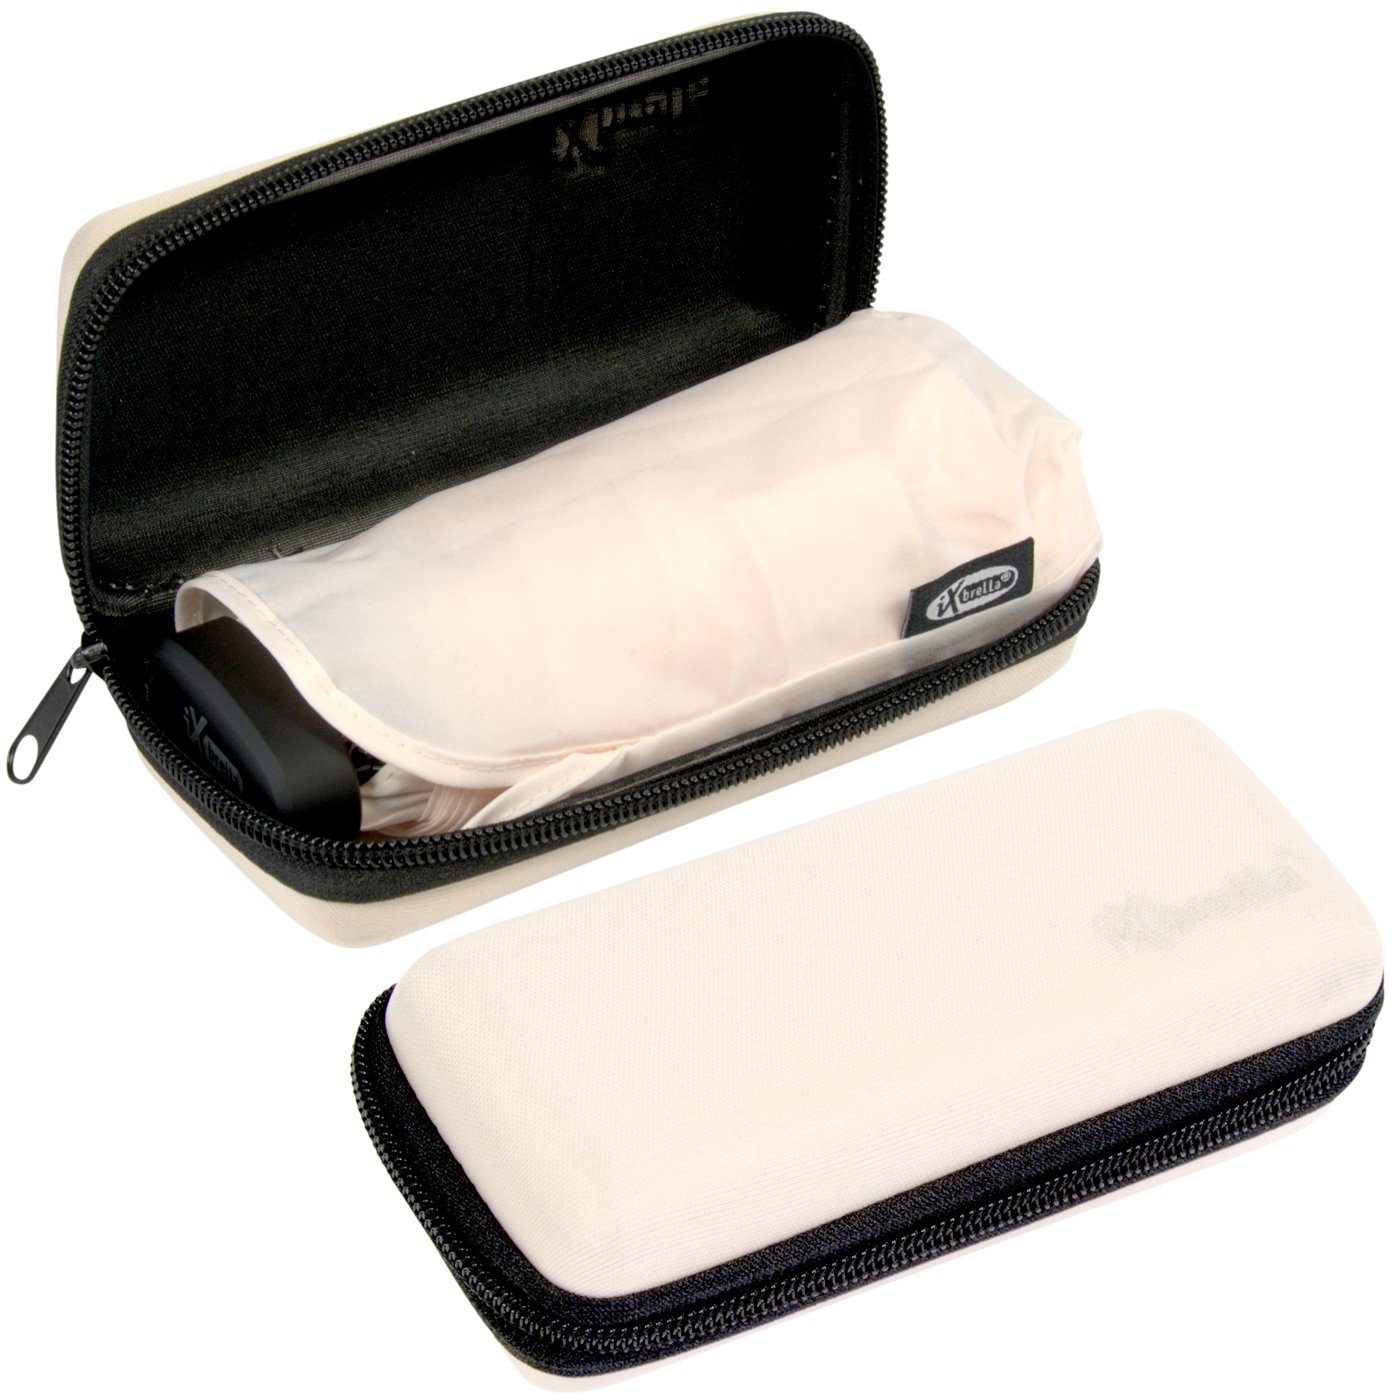 salt Schirm sea Handy Mini - winziger Softcase-Etui cm 15 Format, iX-brella Taschenregenschirm Ultra im mit hellrosa ultra-klein,